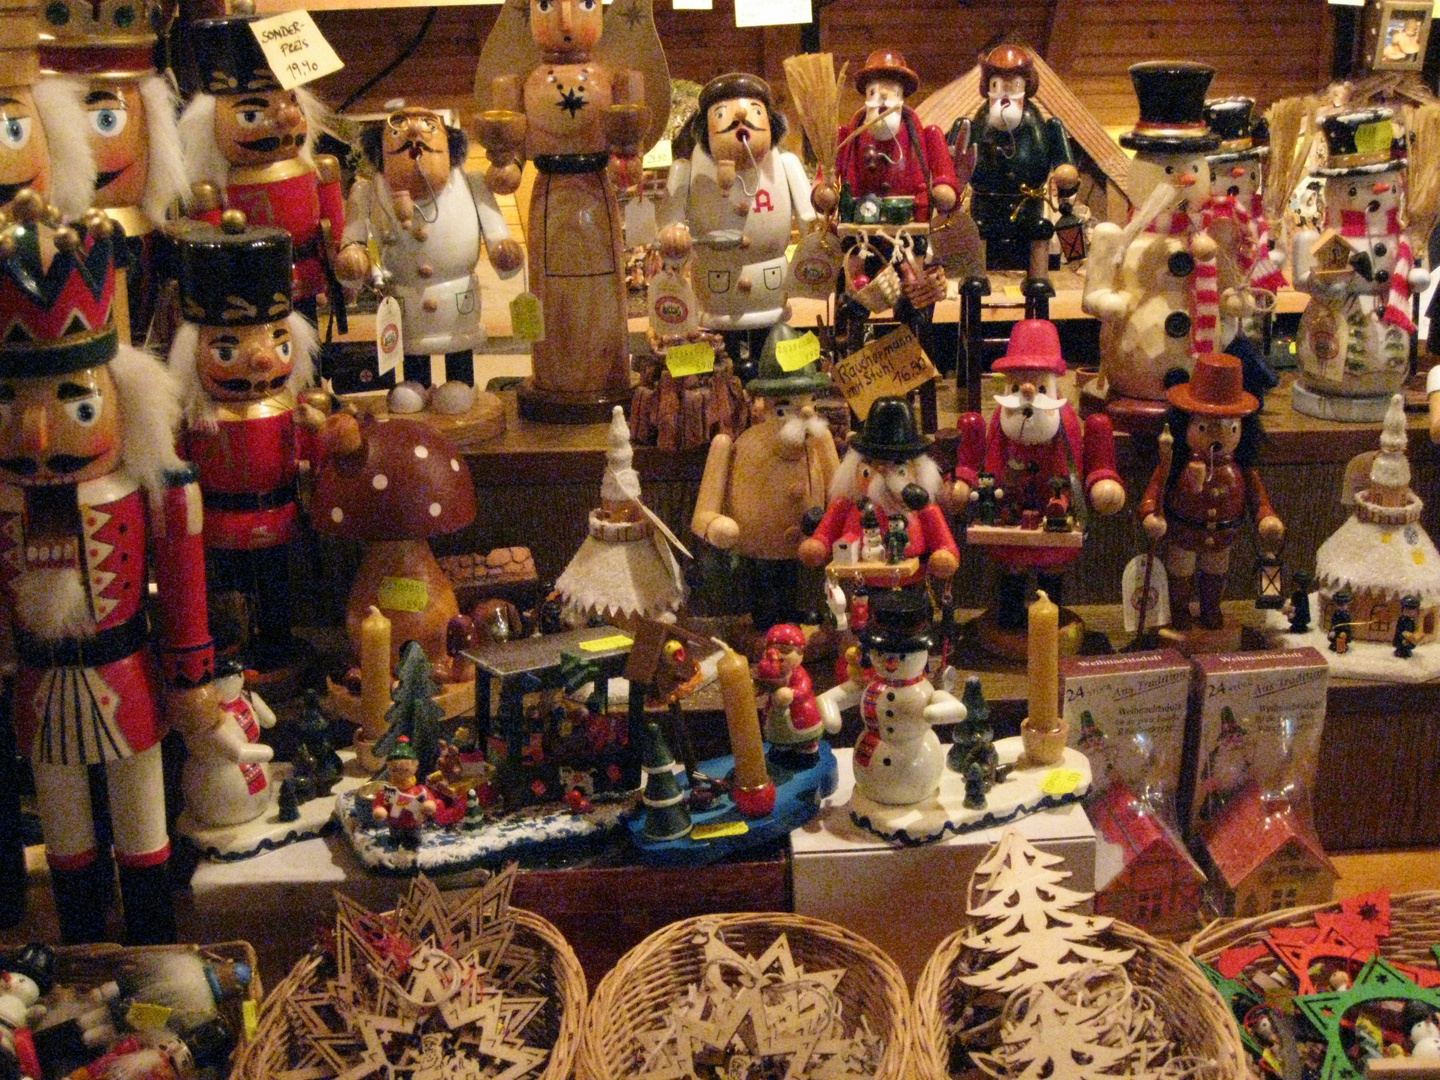 Aschaffenburger Weihnachtsmarkt